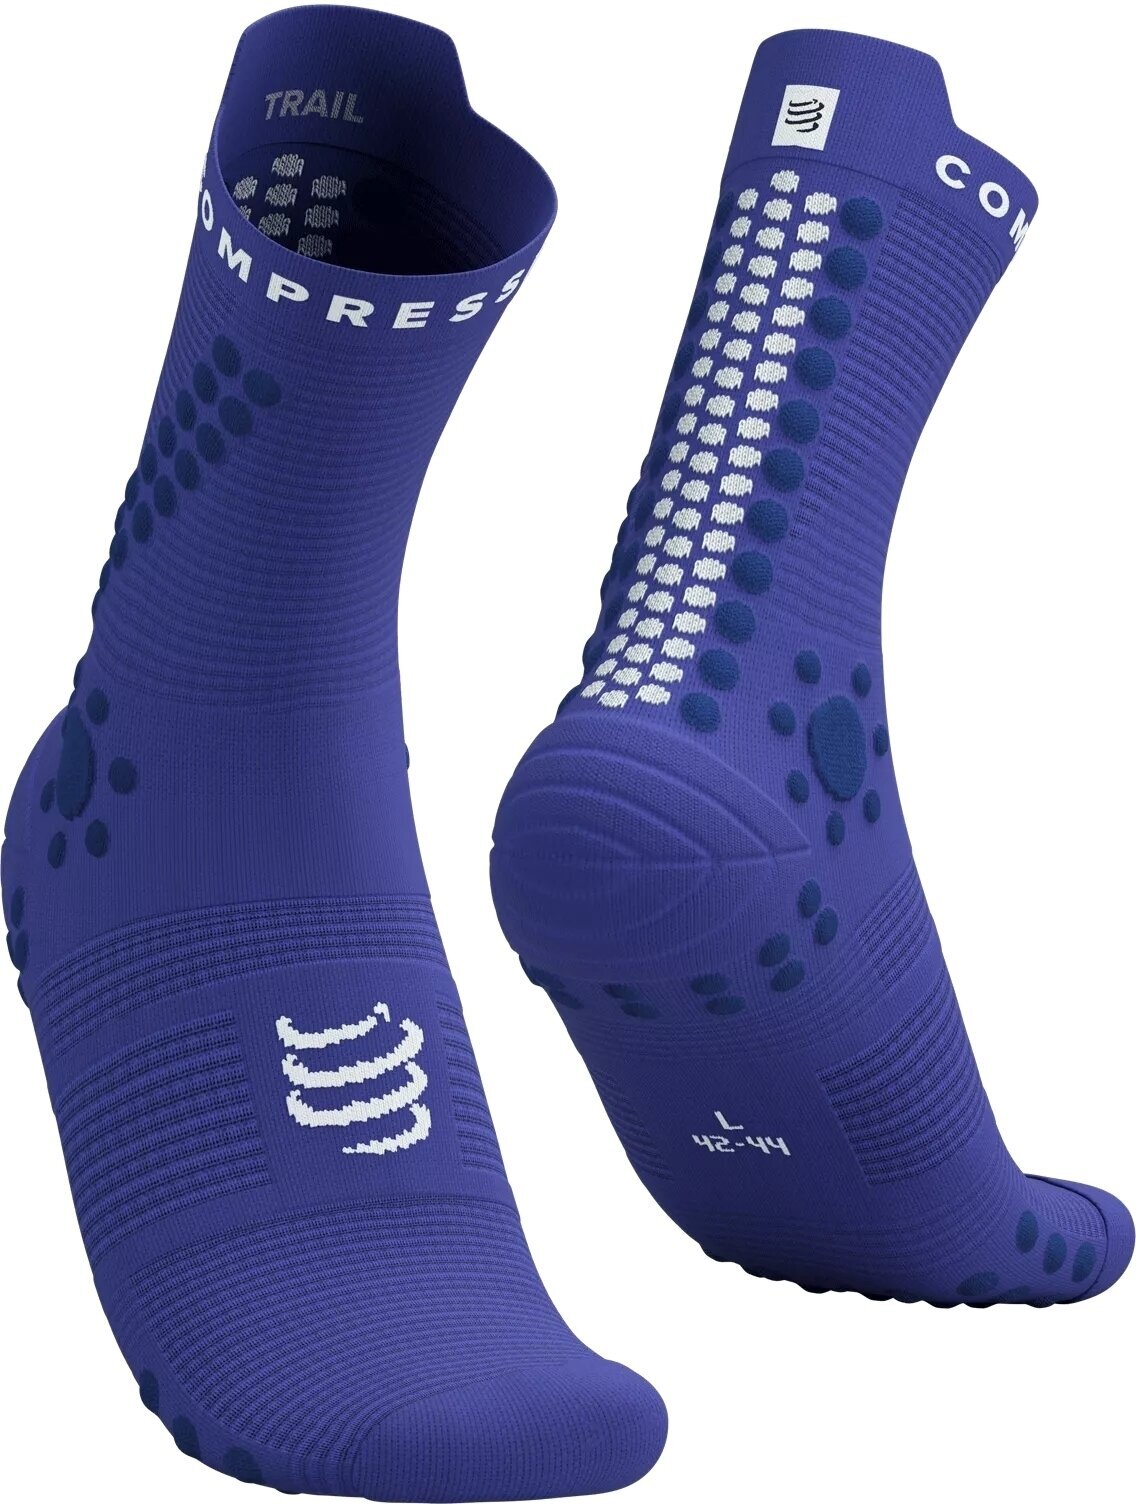 Чорапи за бягане
 Compressport Pro Racing Socks V4.0 Trail Dazzling Blue/Dress Blues/White T3 Чорапи за бягане